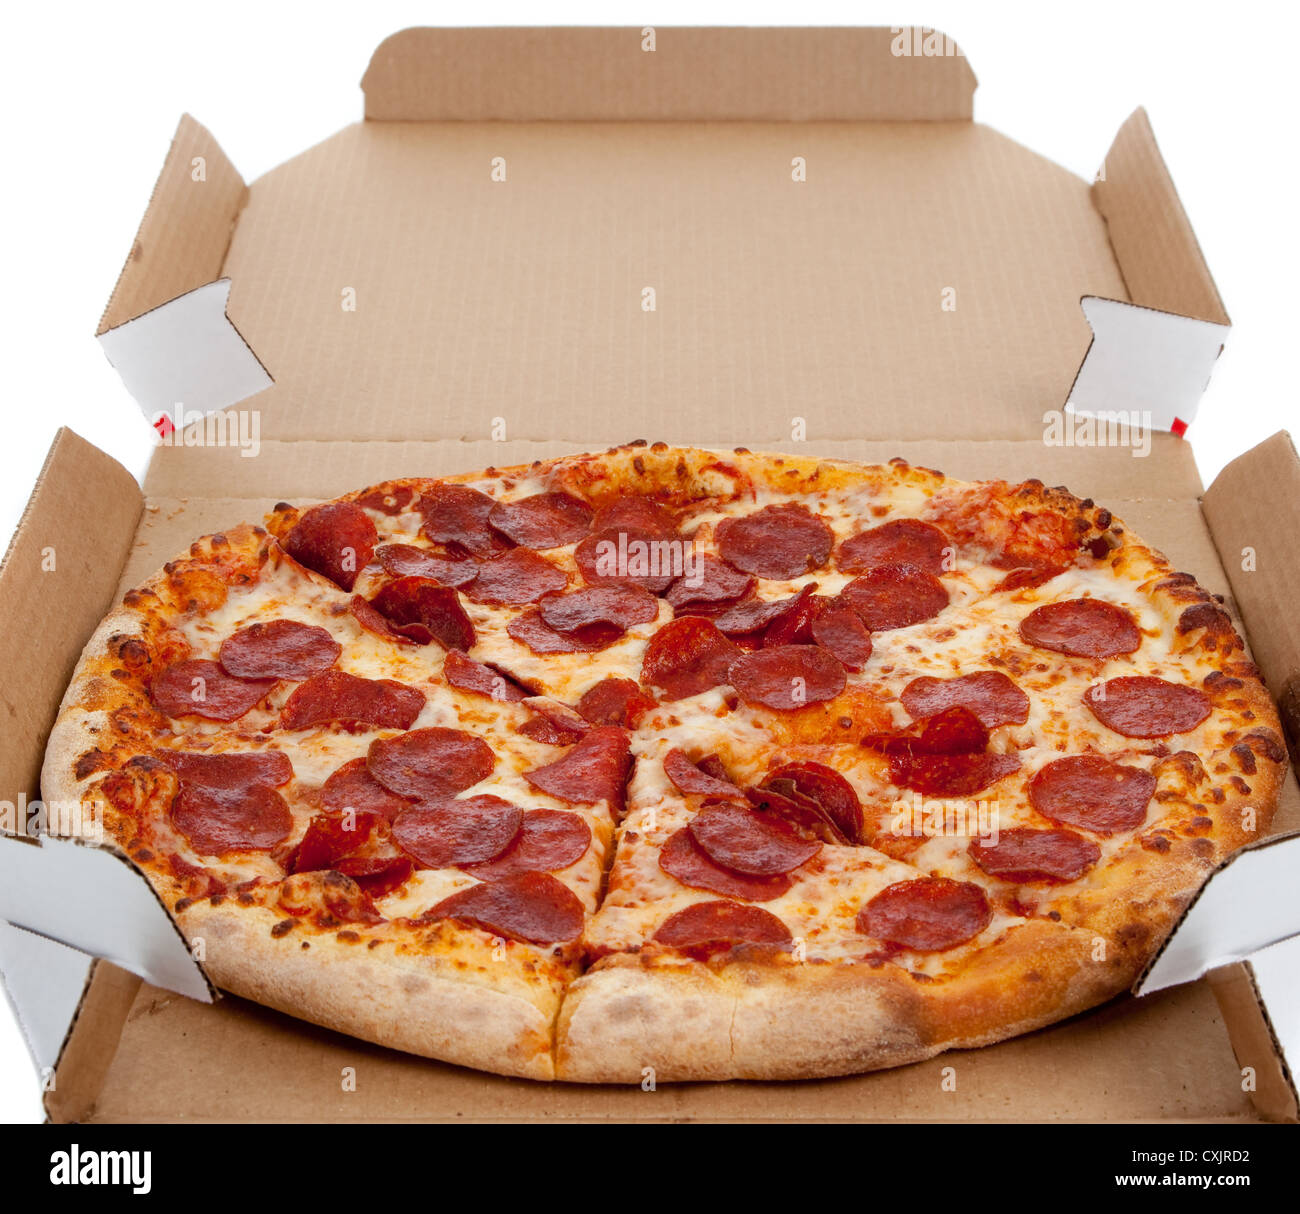 фото пепперони пицца в коробке фото 1